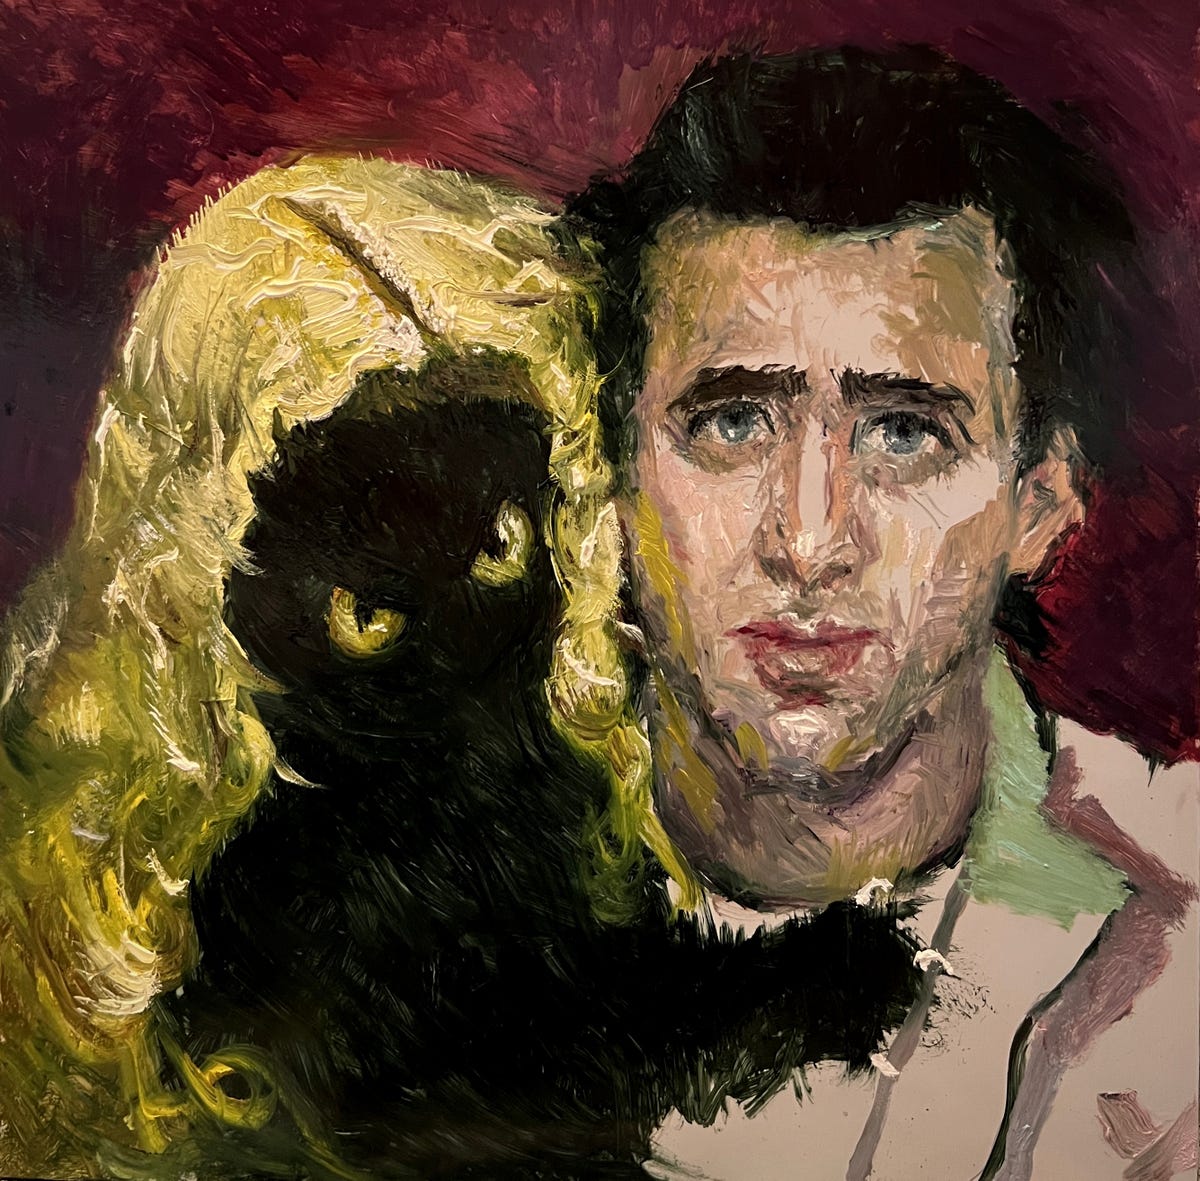 Wild at Art yağlı boya tablosu Nic Cage'in sarı gözlü bir kara kedi tarafından kucaklandığını gösteriyor.